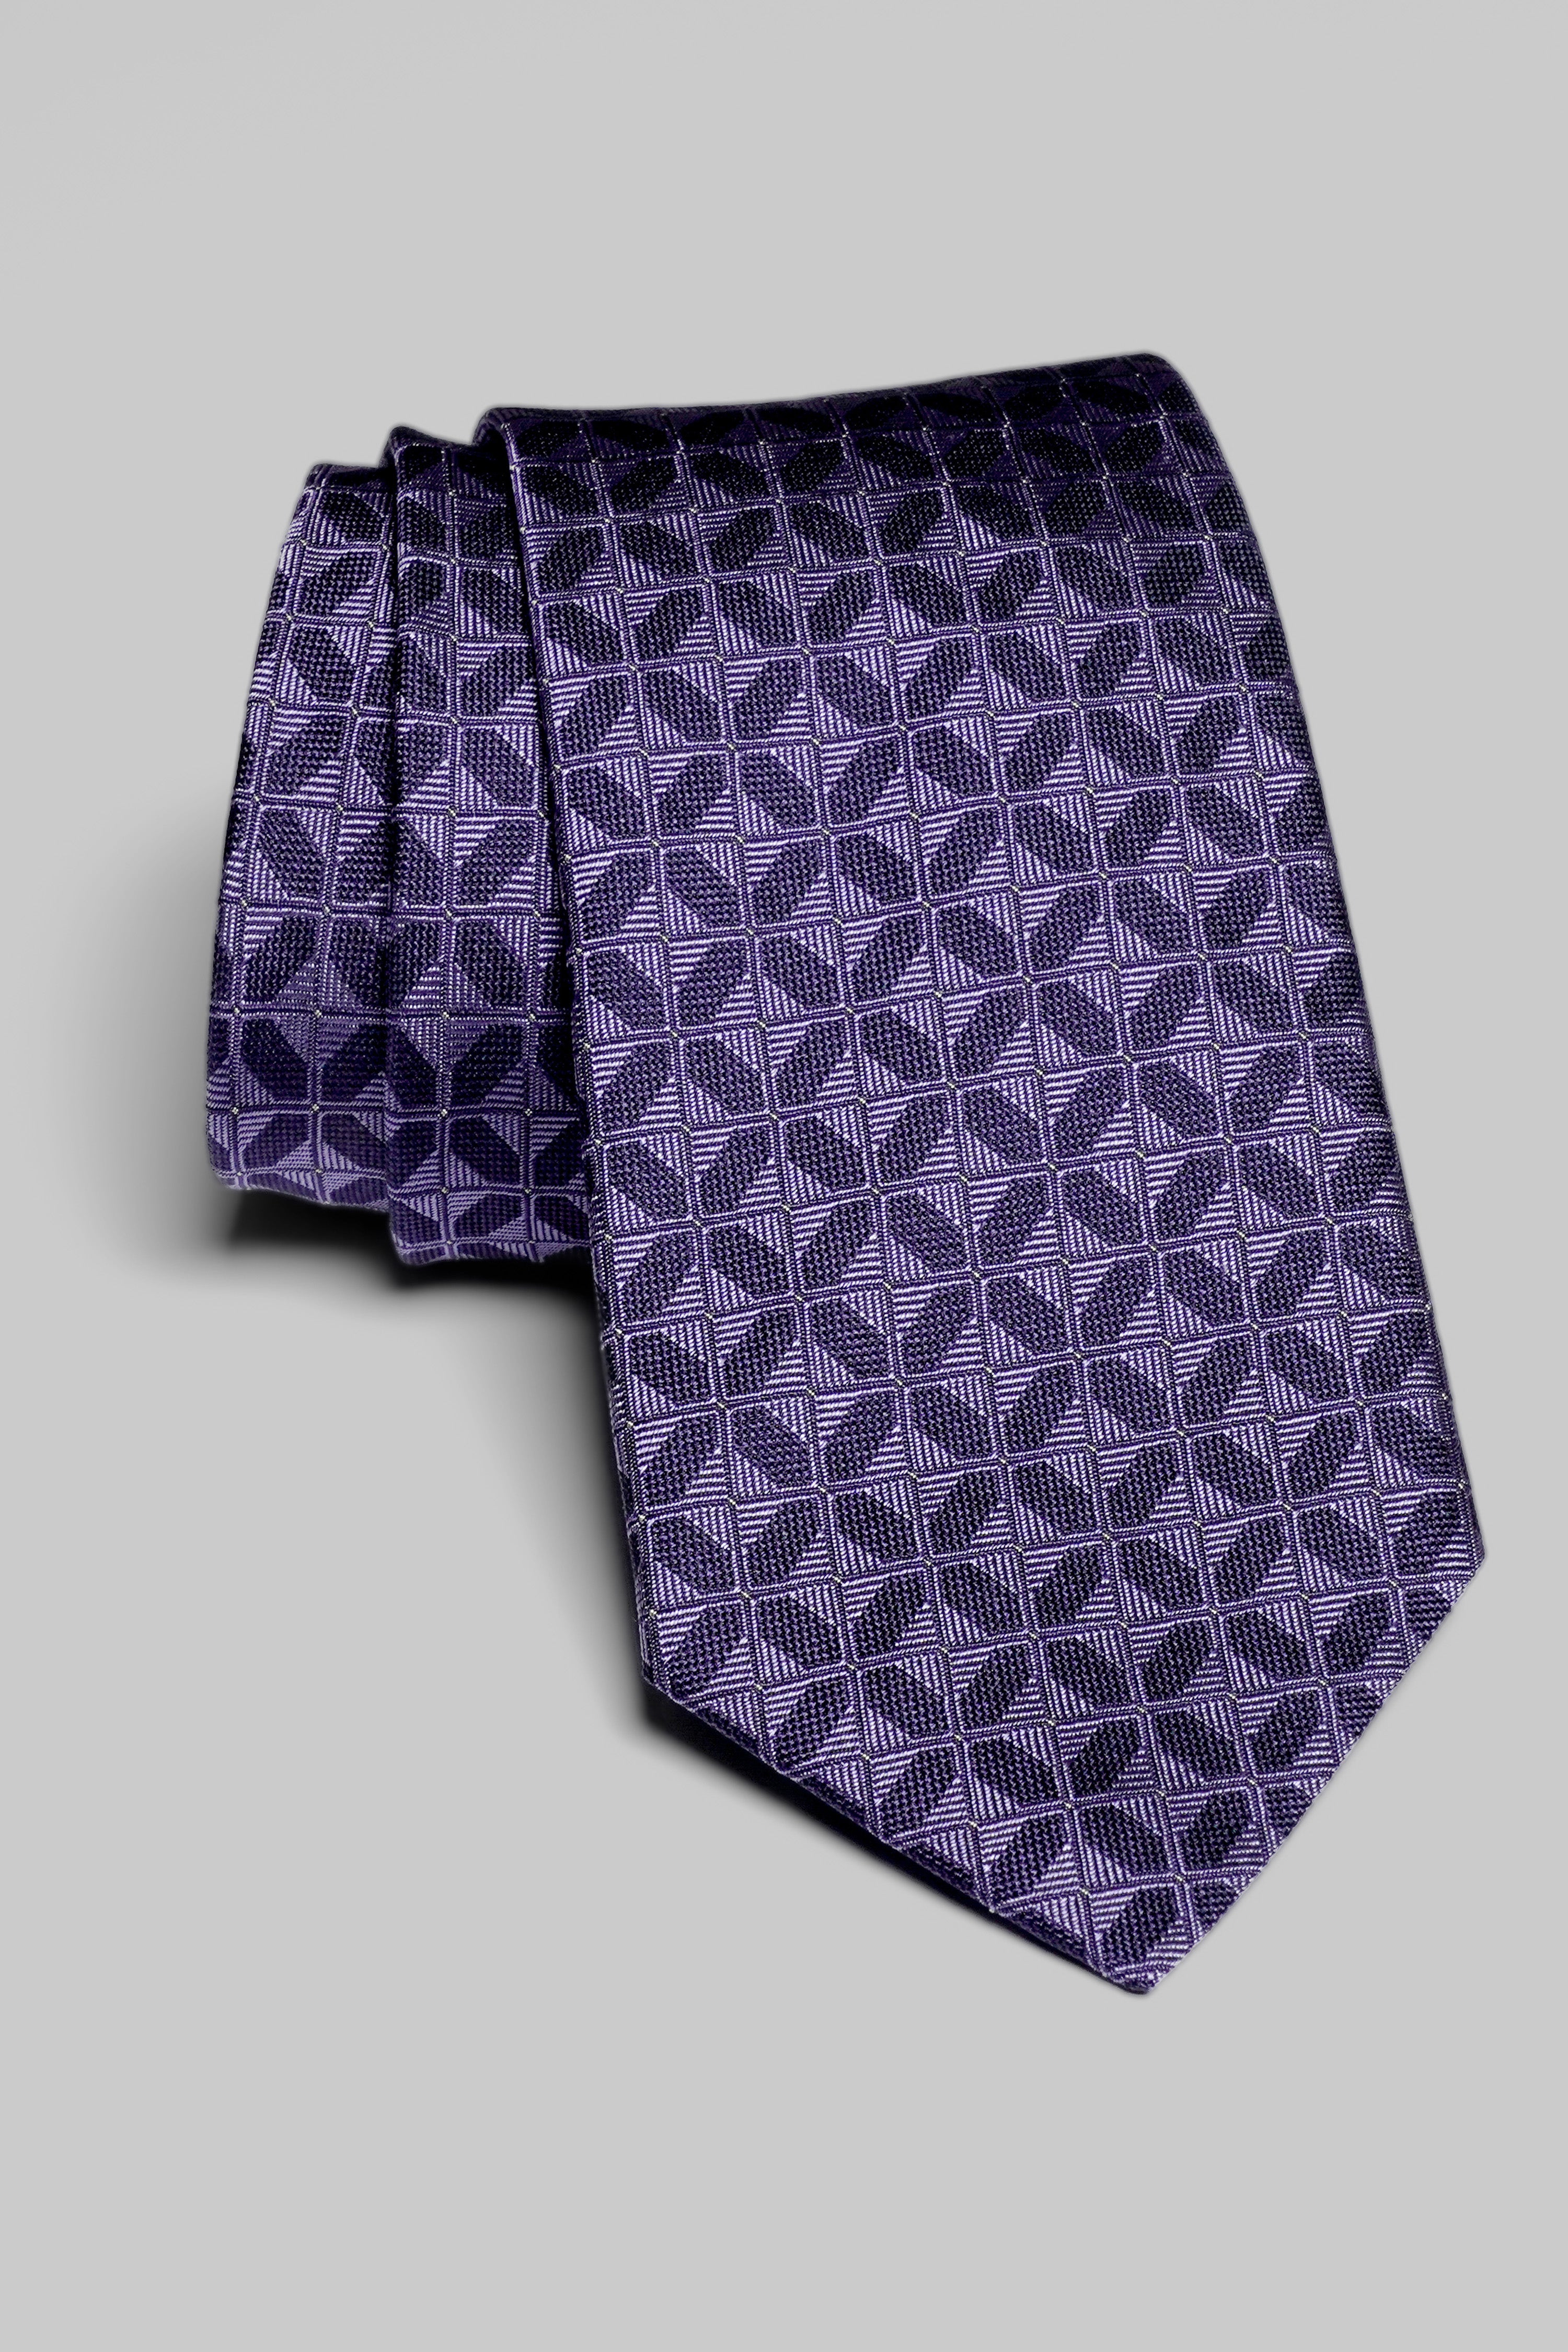 Vue alternative Gordon cravate tissée en violet